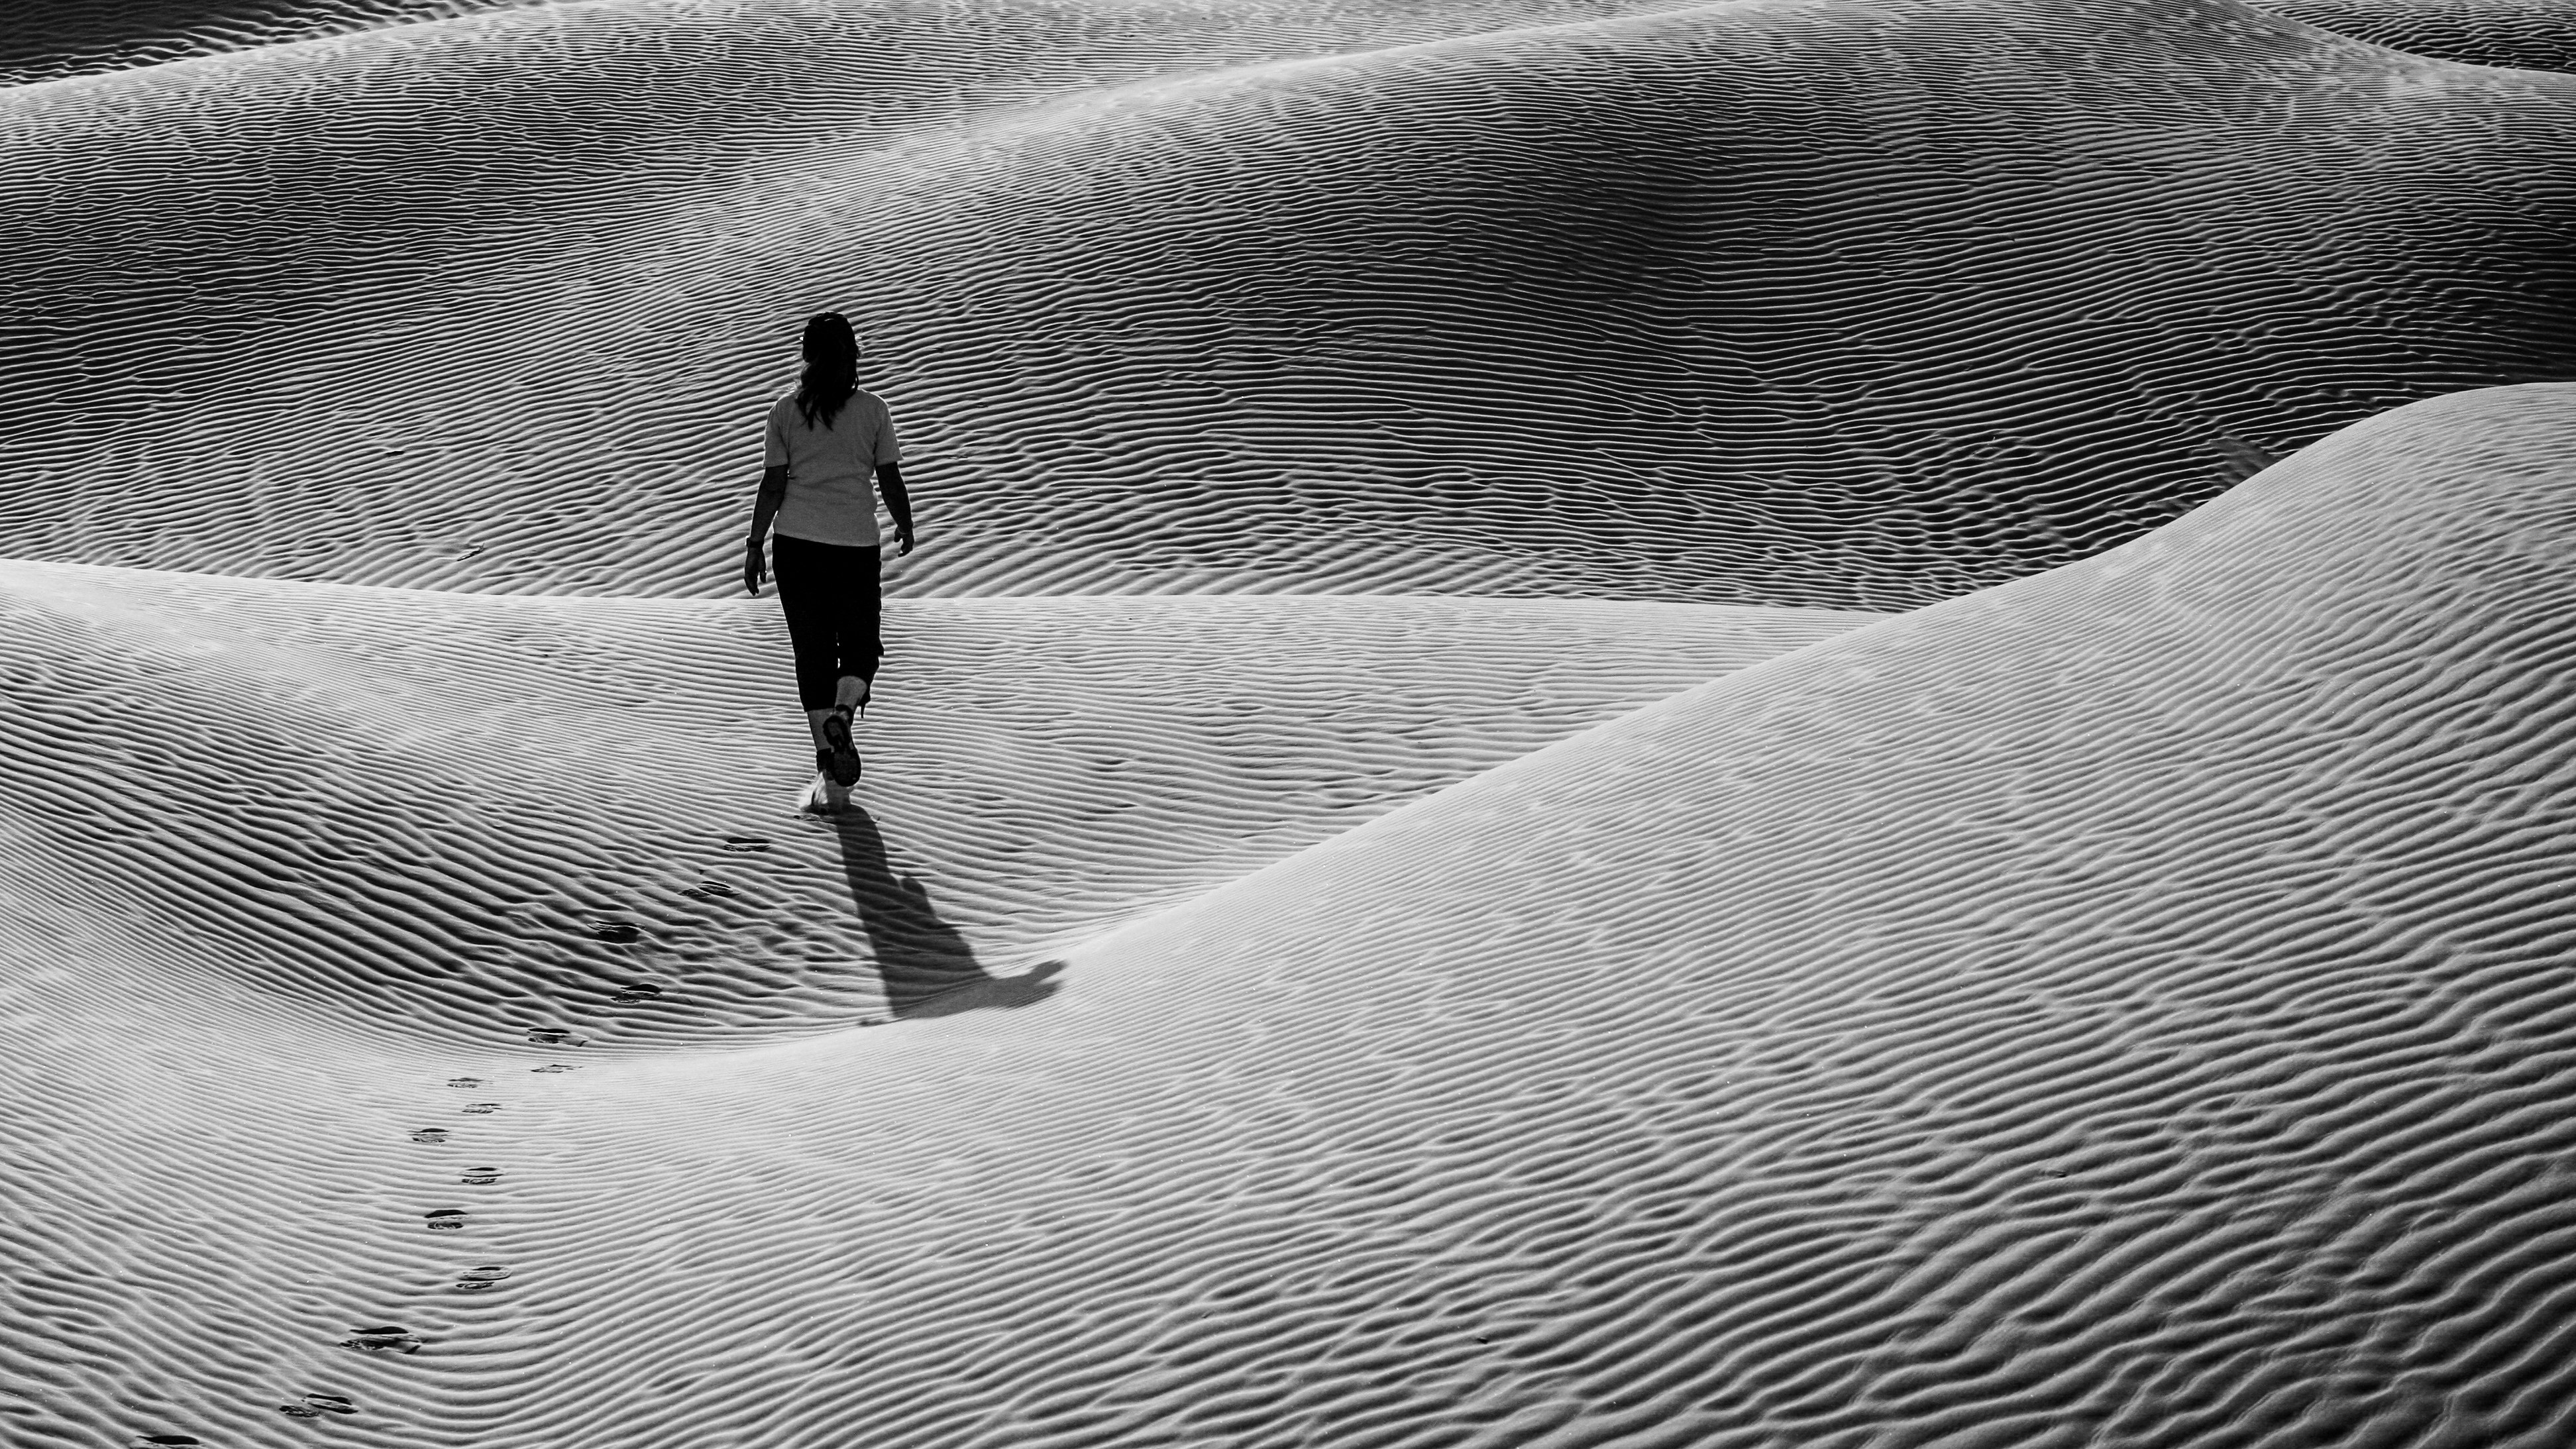 woman in black jacket walking on sand